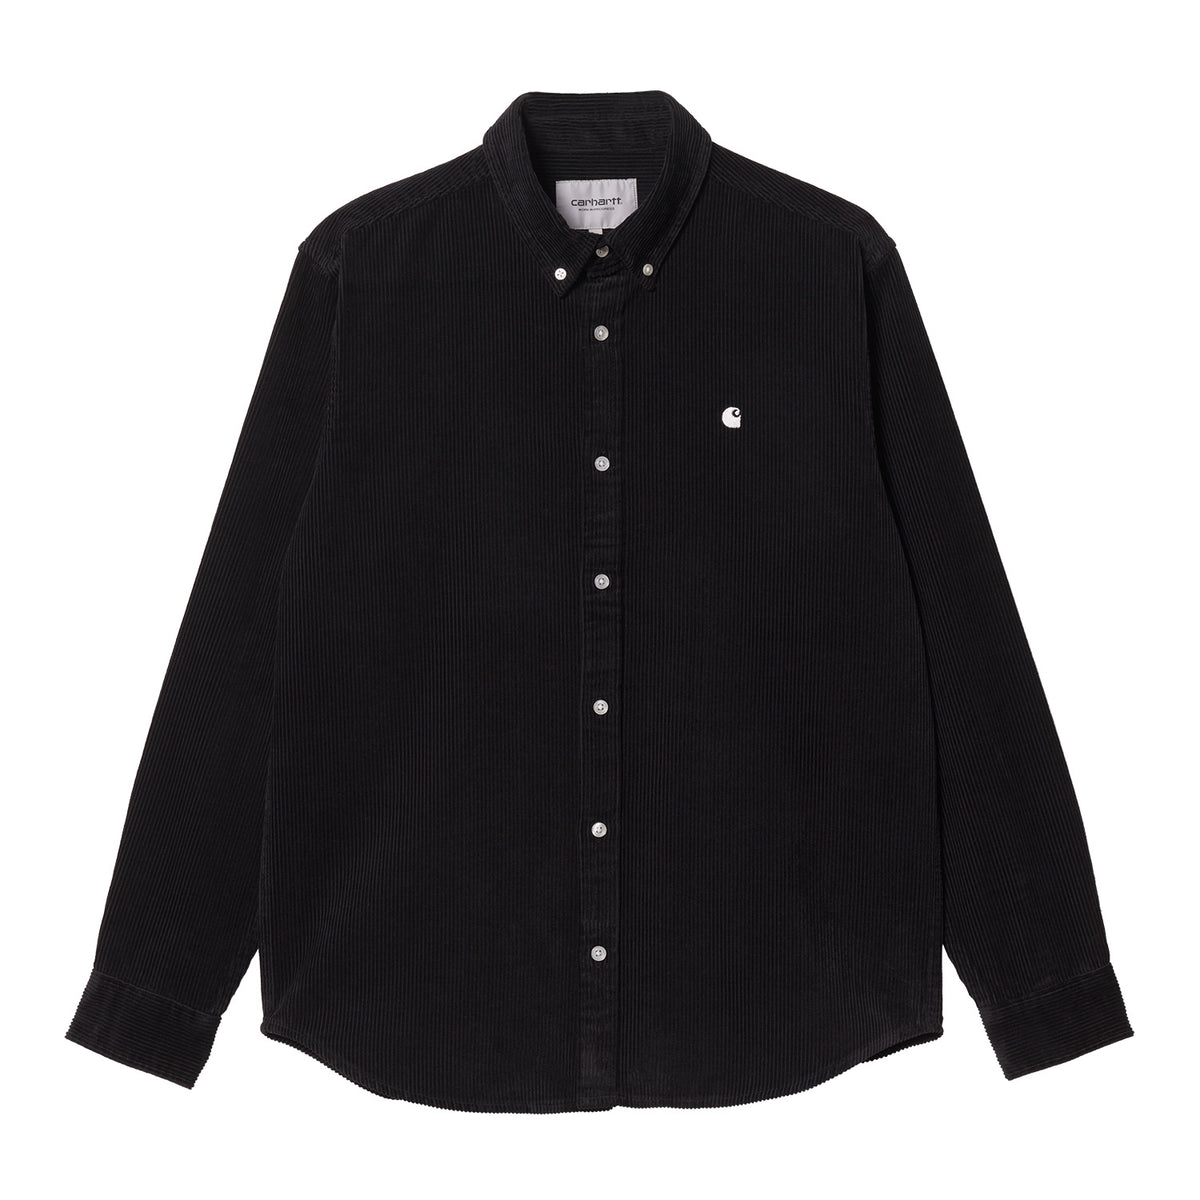 Carhartt L/S Madison Cord Shirt - Black/Wax